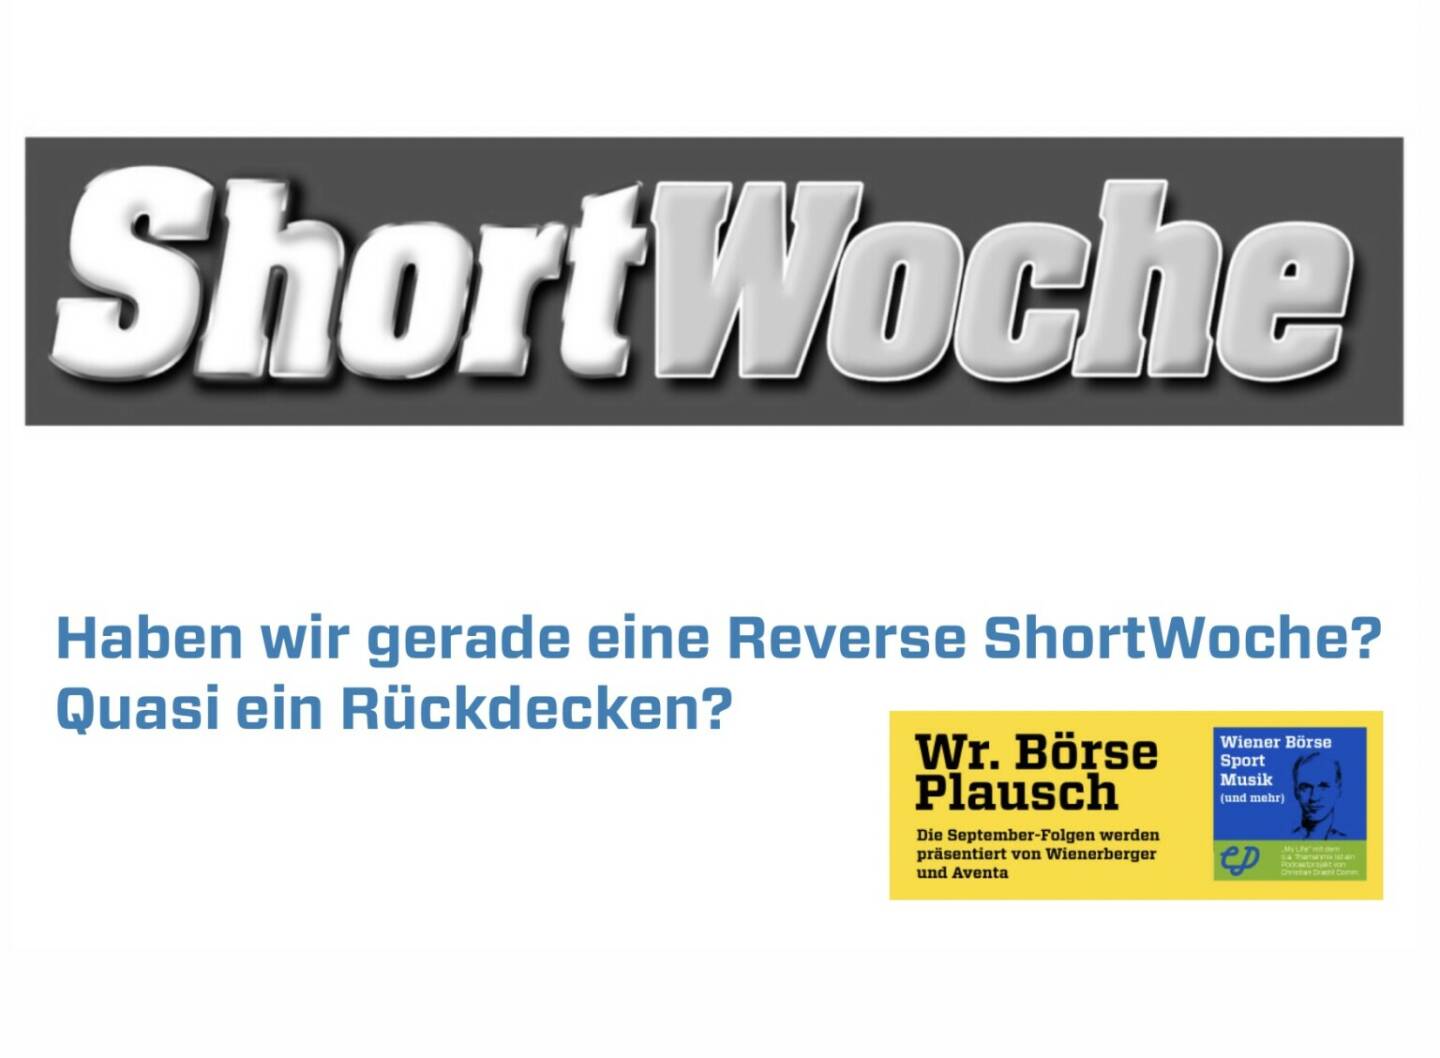 Haben wir an der Wiener Börse gerade eine Reverse ShortWoche? Quasi ein Rückdecken? Dies und mehr in Folge S3/41 der Wiener Börse Pläusche im Rahmen von http://www.christian-drastil.com/podcast . 